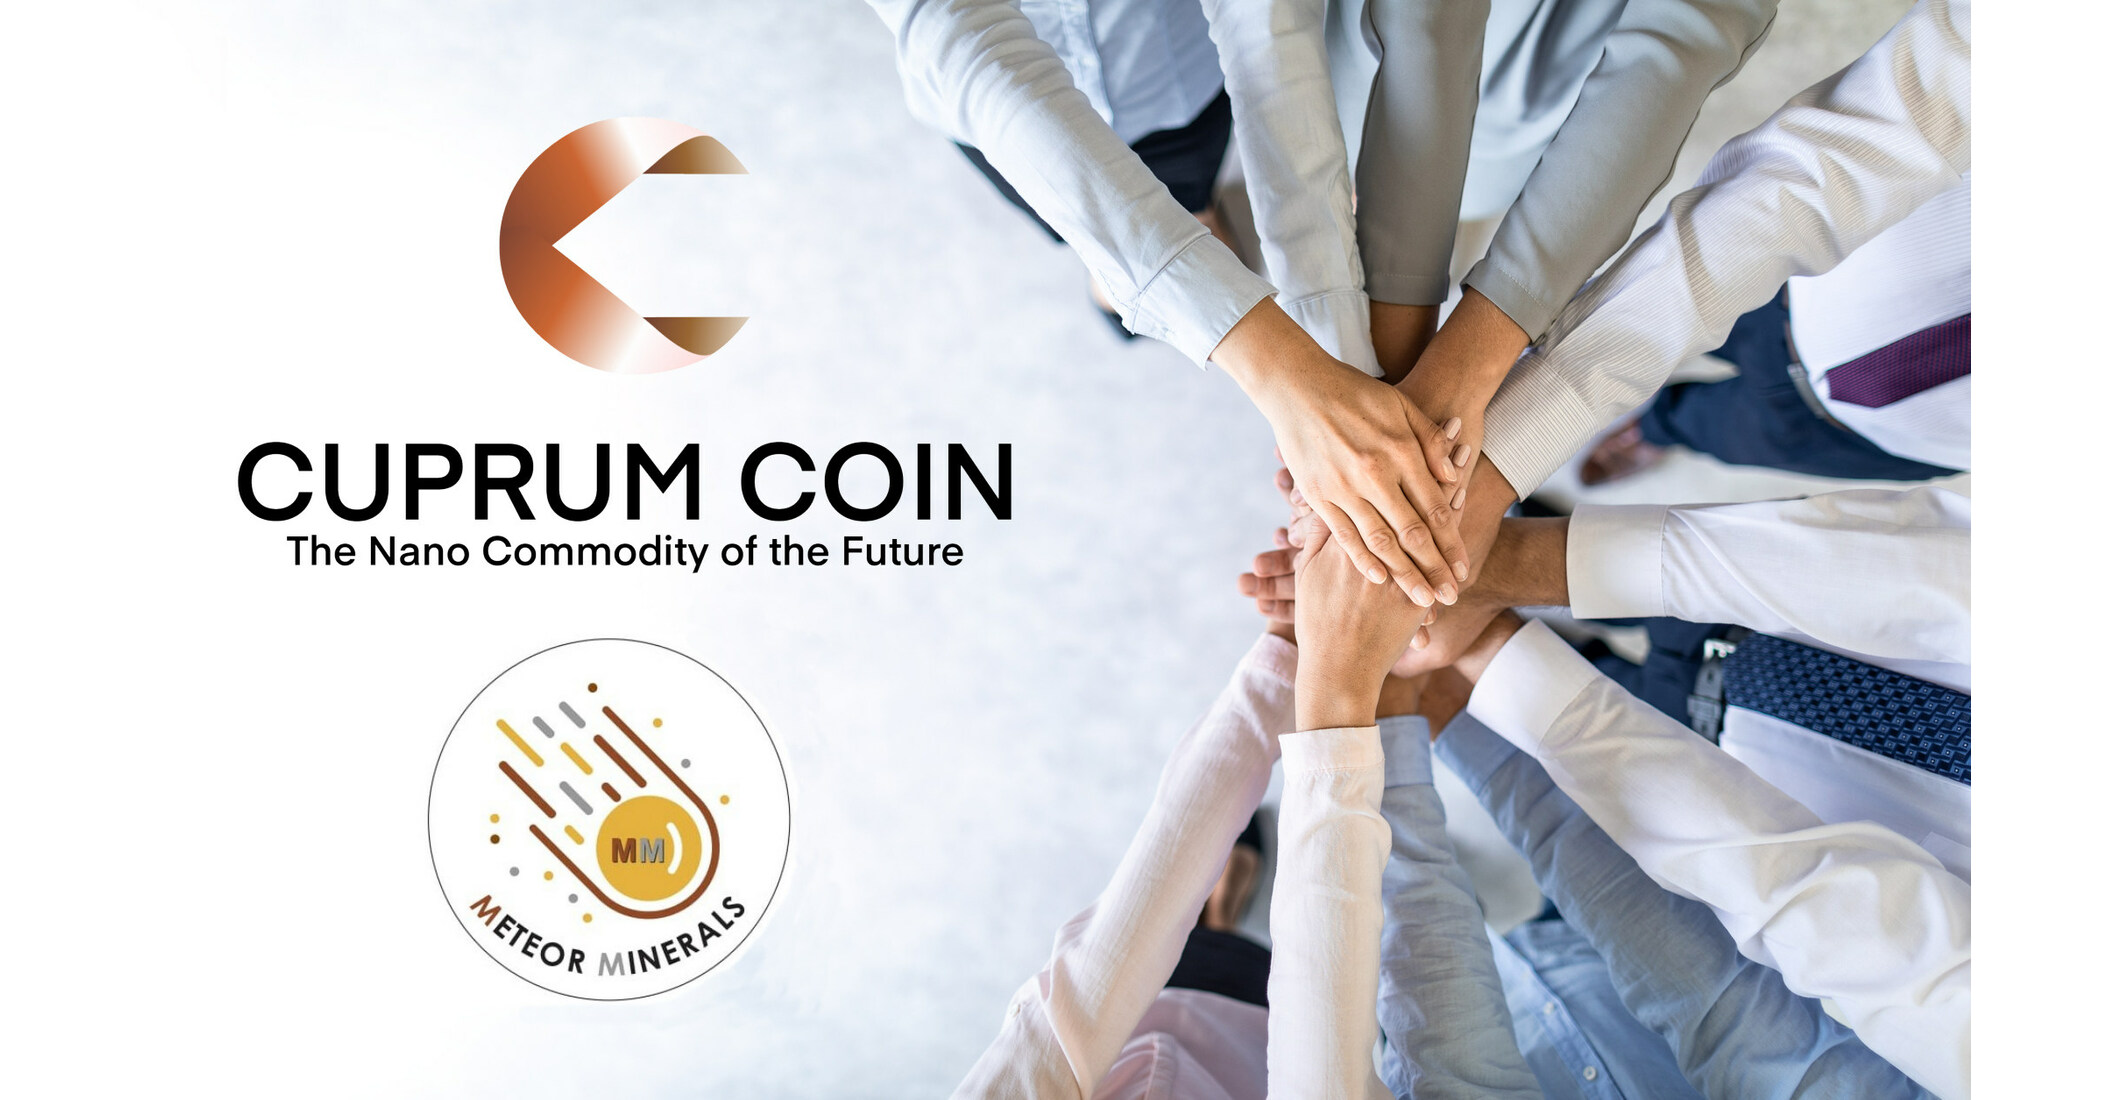 Cuprum Coin y Meteor Minerals Group, propietario de una mina de cobre y productor de polvo de nanocobre, se unieron a través de una asociación estratégica.